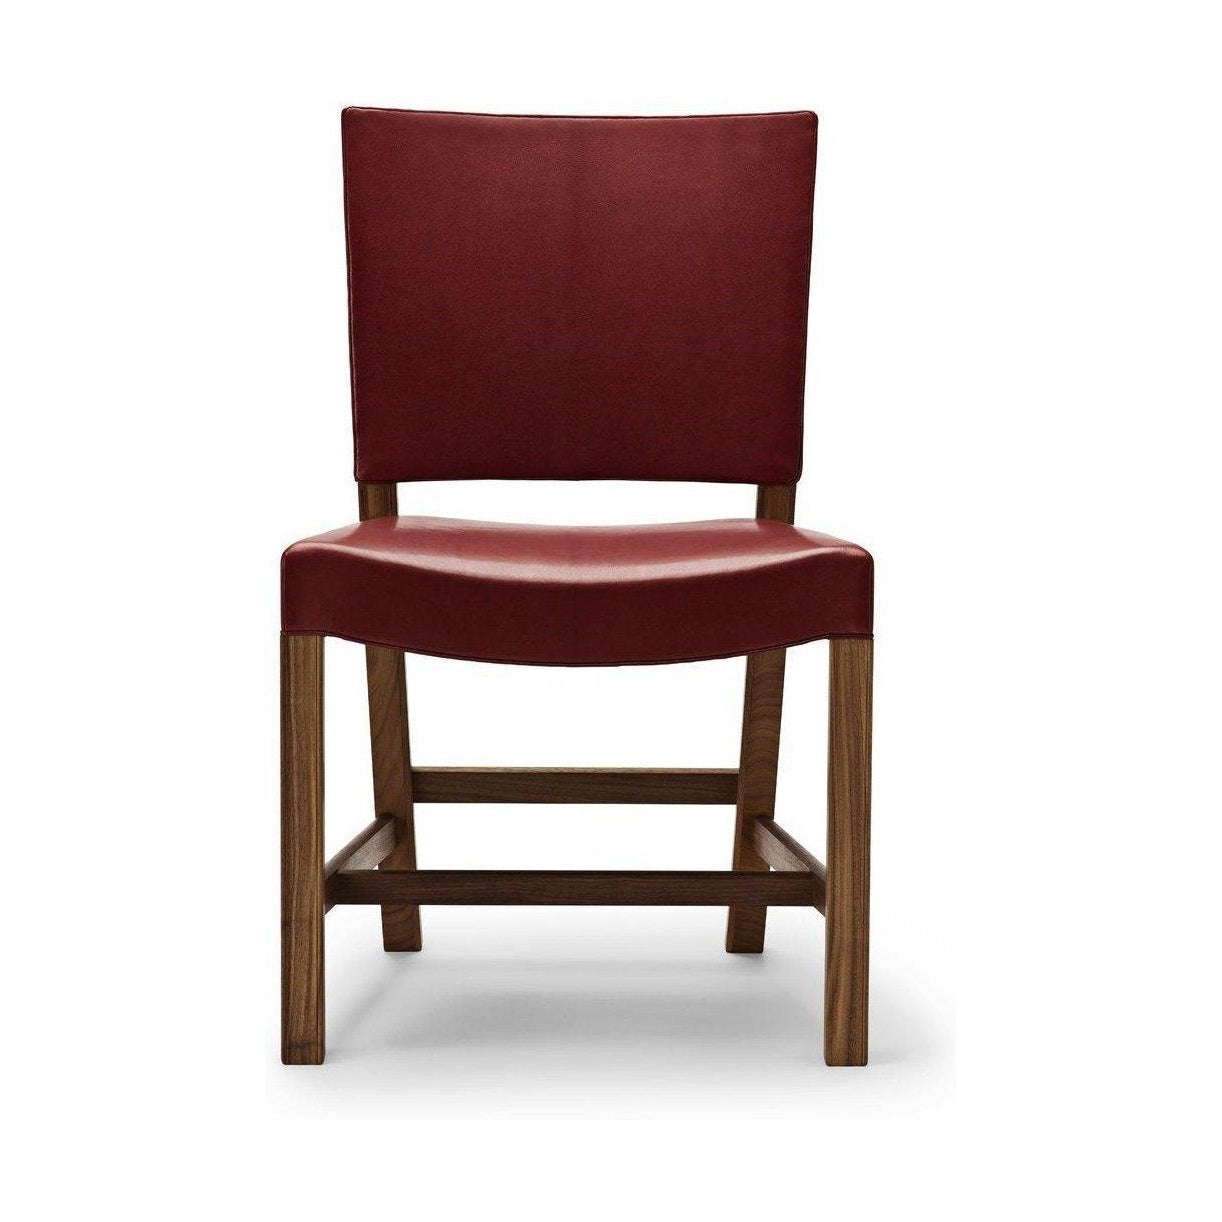 Carl Hansen KK47510 La chaise rouge, noix laquée / peau de chèvre rouge